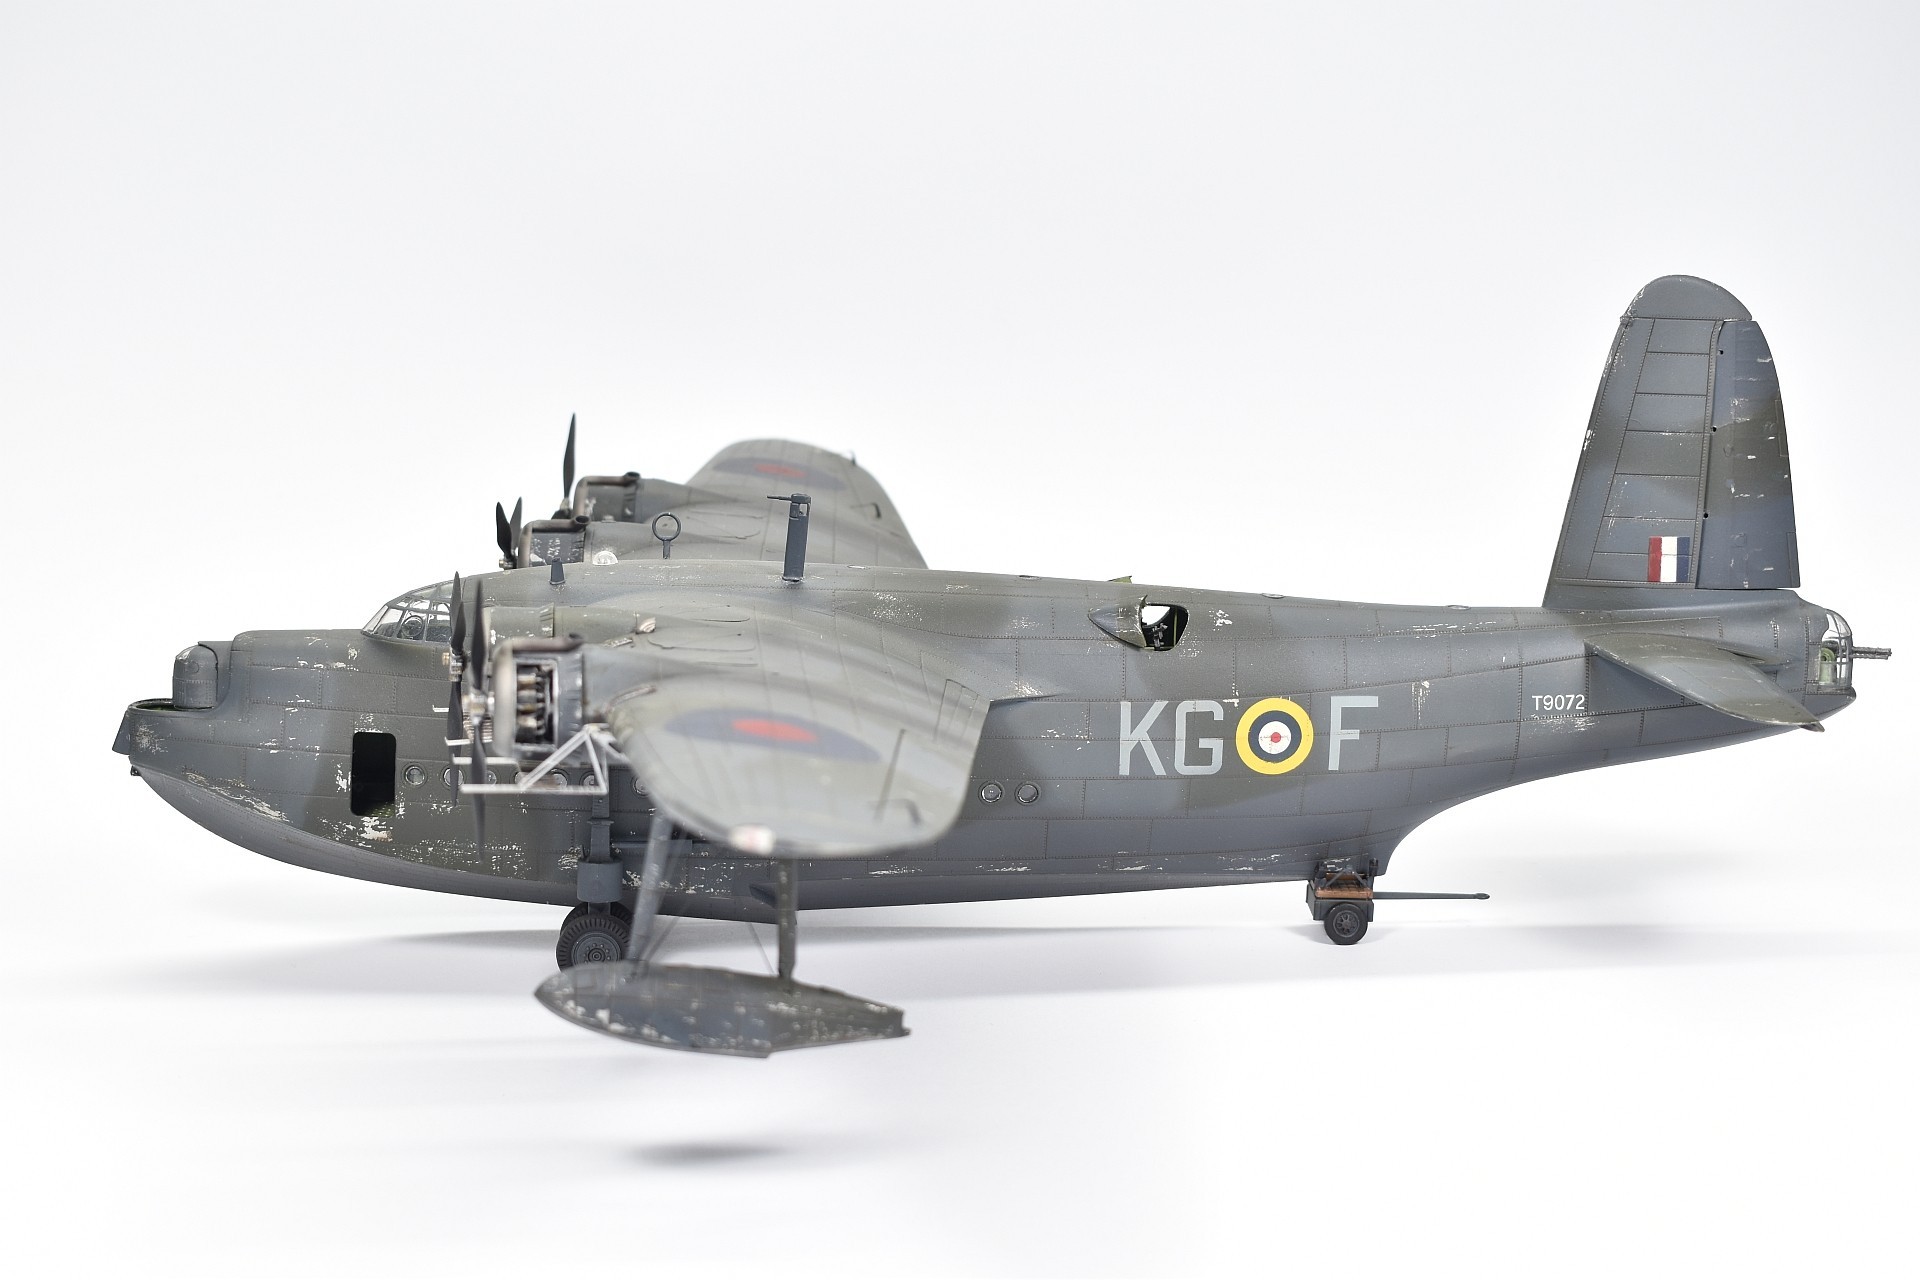 RAF - No. 204 Squadron and Short Sunderland flying boat Mk.1 KG-F/T9072 ...